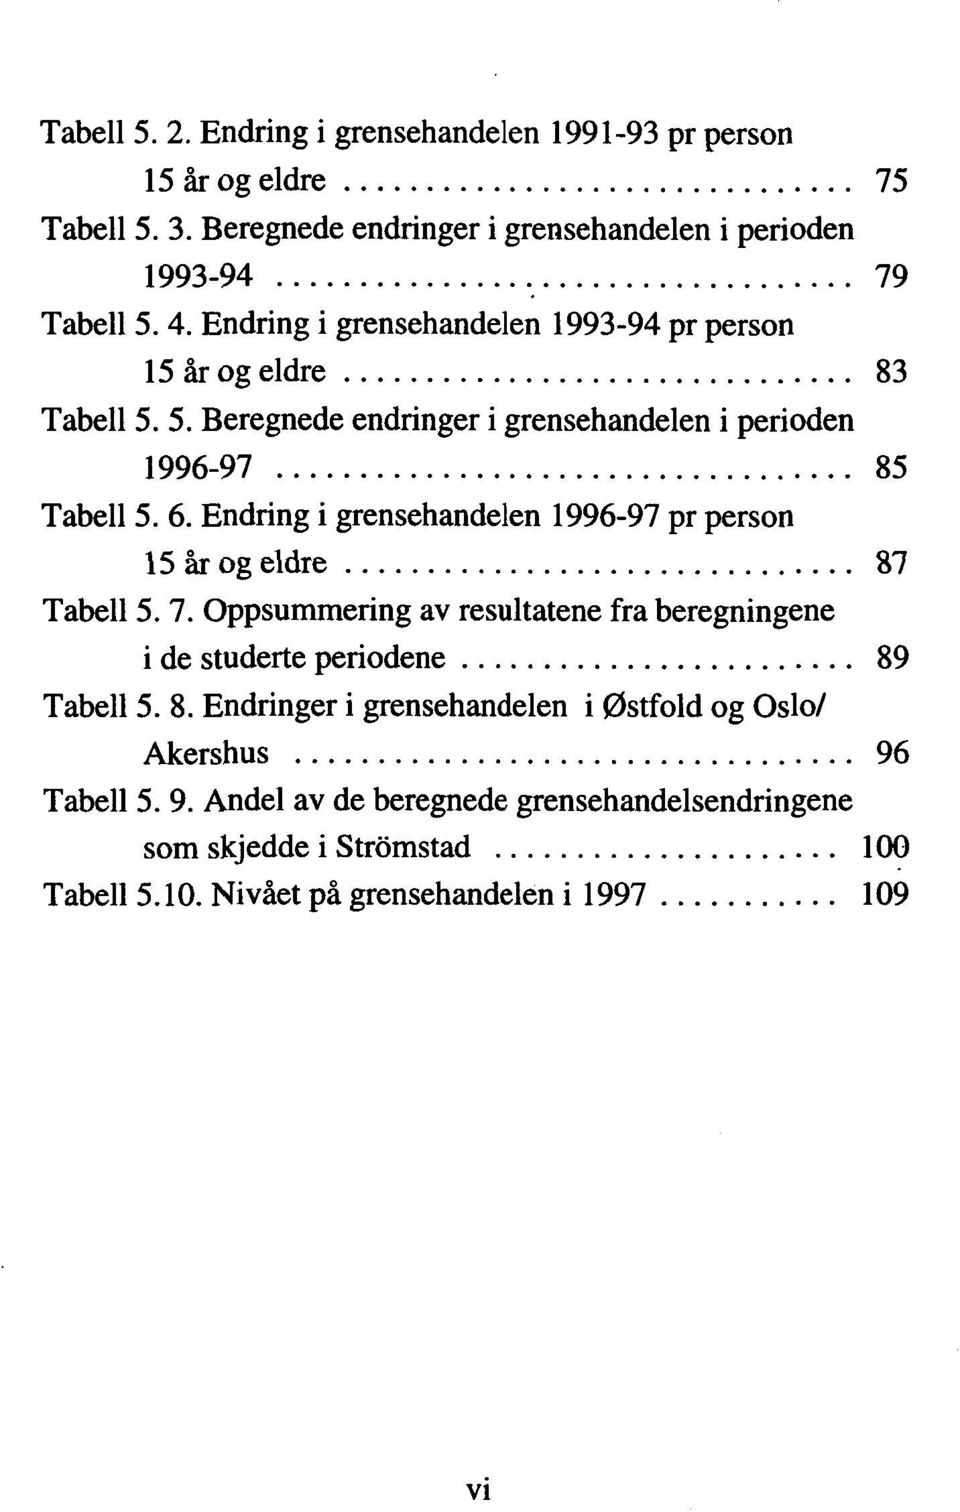 Endring i grensehandelen 1996-97 pr person 15 år og eldre... 87 Tabell 5. 7. Oppsummering av resultatene fra beregningene de i studerte periodene... 89 Tabell 5. 8. Endringer i grensehandelen i Østfold og Oslo/ Akershus.